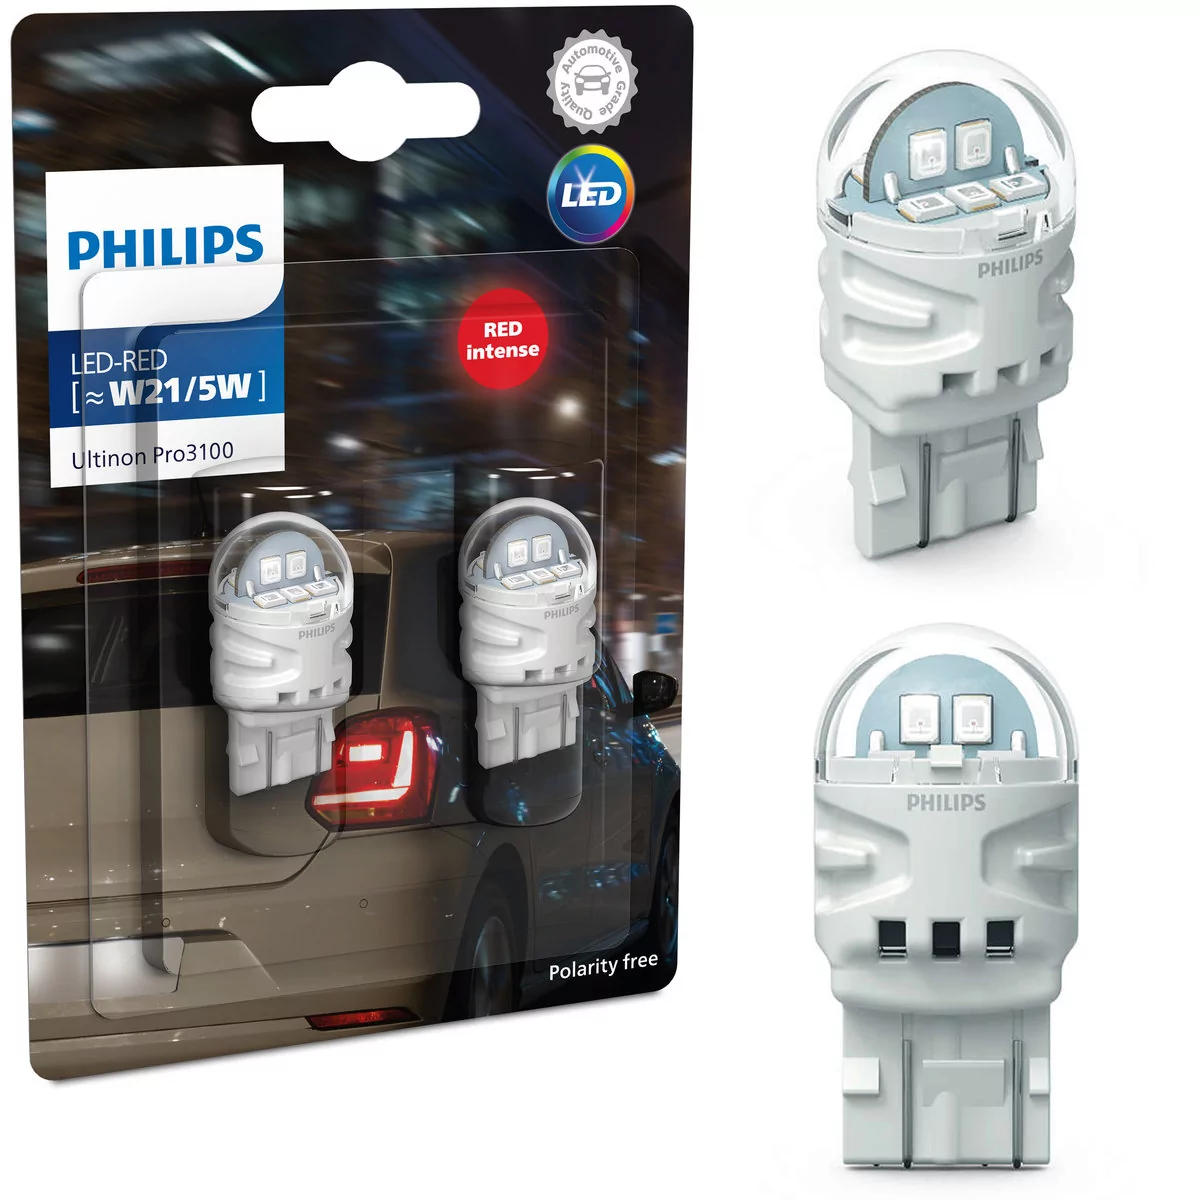 Żarówki Philips LED Ultinion Pro3100 W21/5W RED RU31 2szt